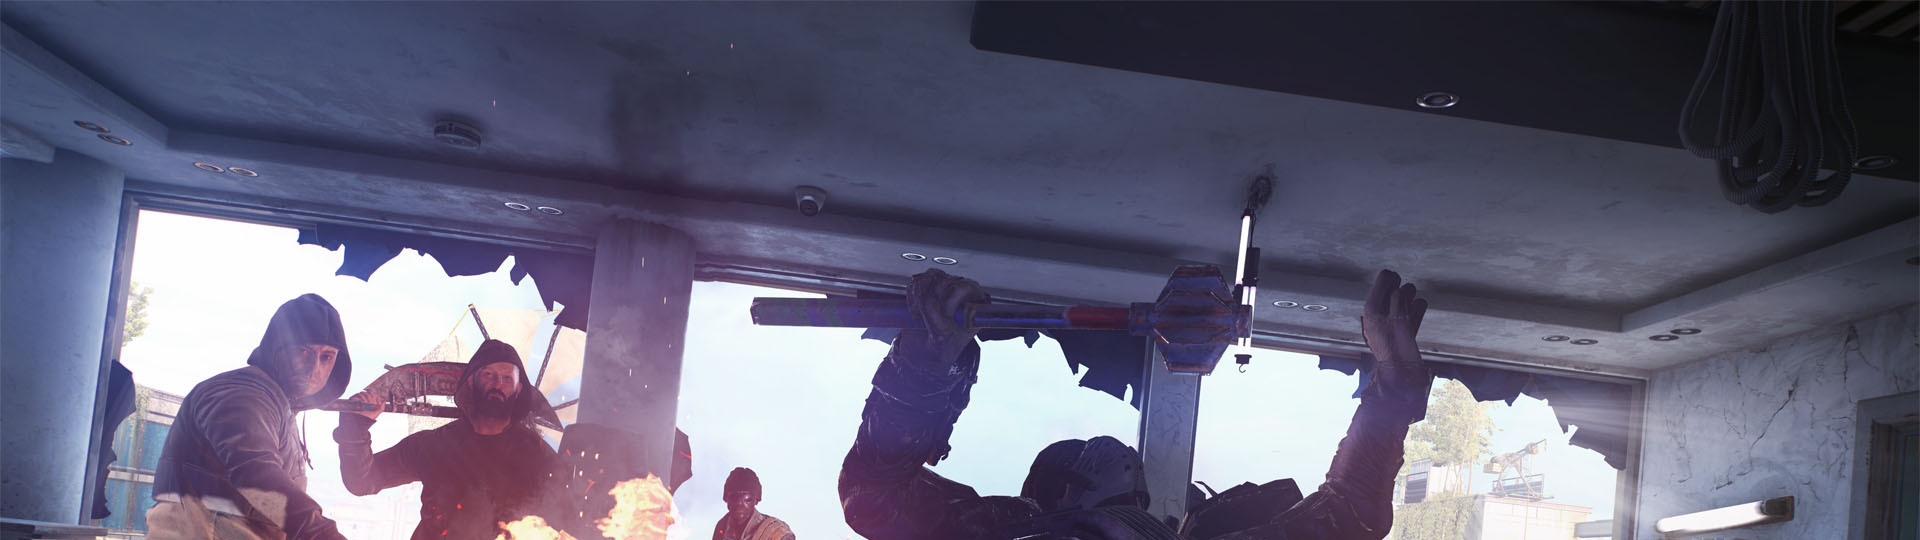 Nový gameplay ze zombie akce Dying Light 2 Stay Human | Videa